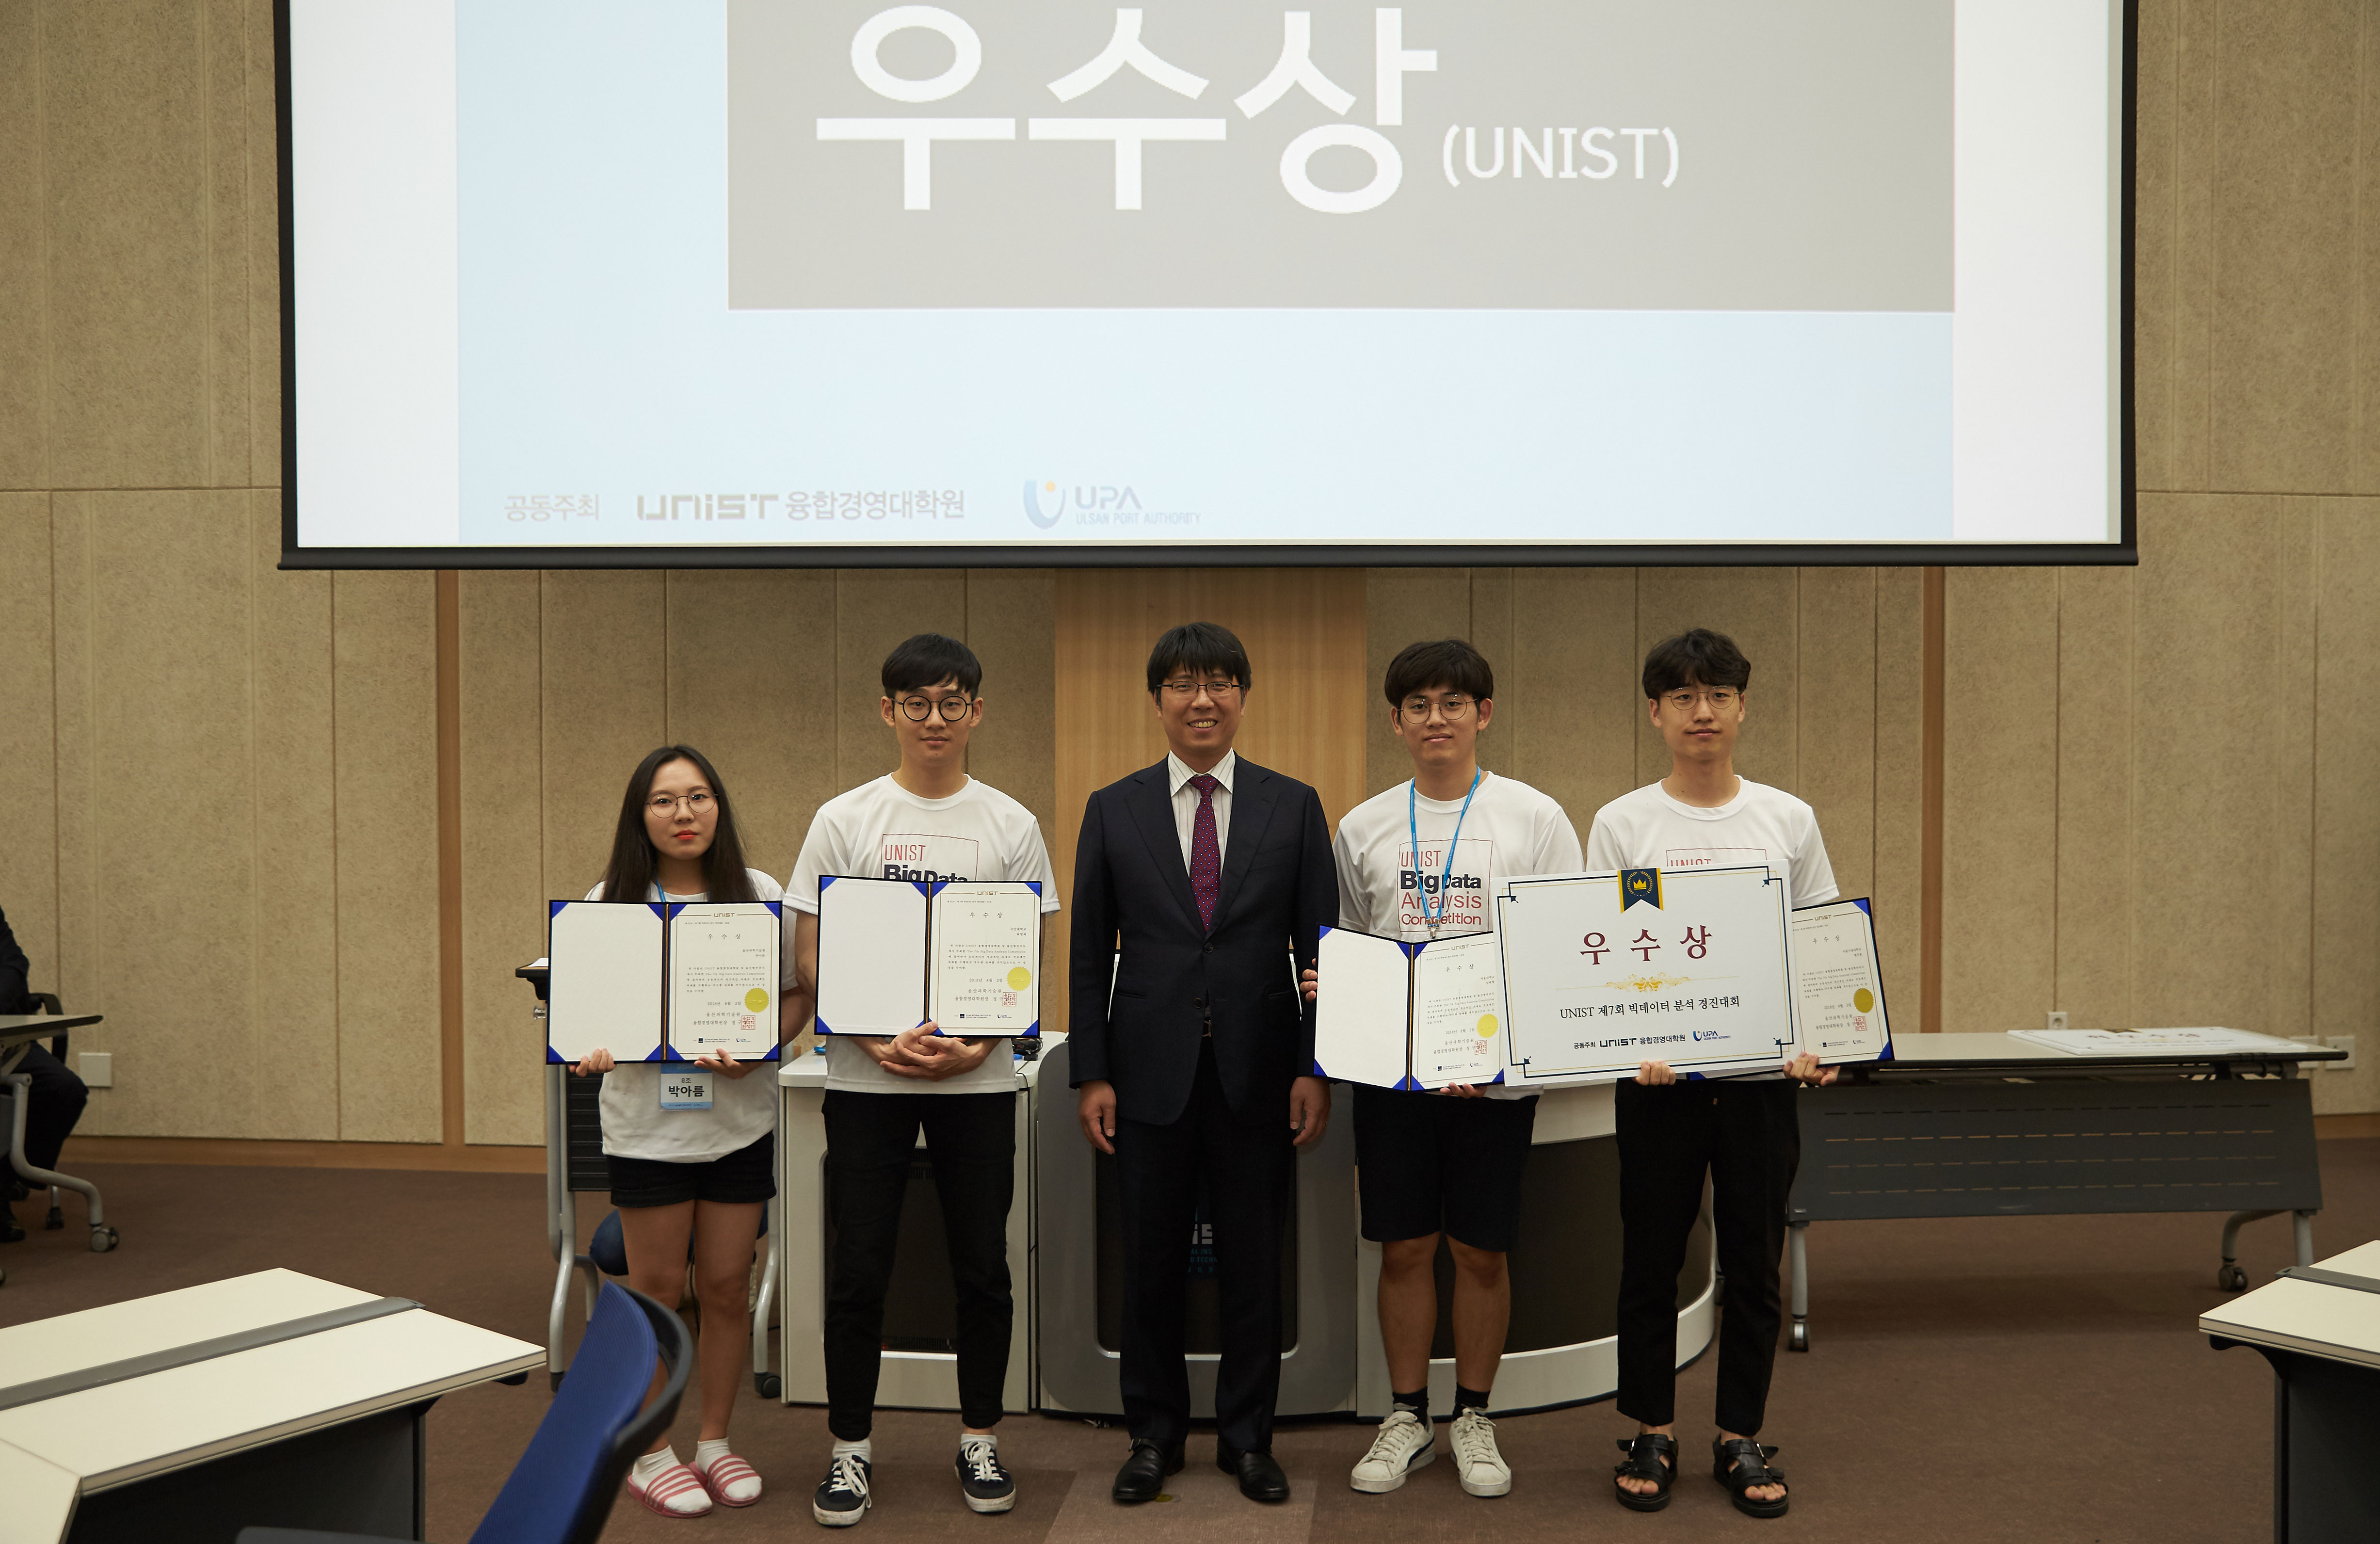 우수상을 수상한 학생들. | 사진: 김경채